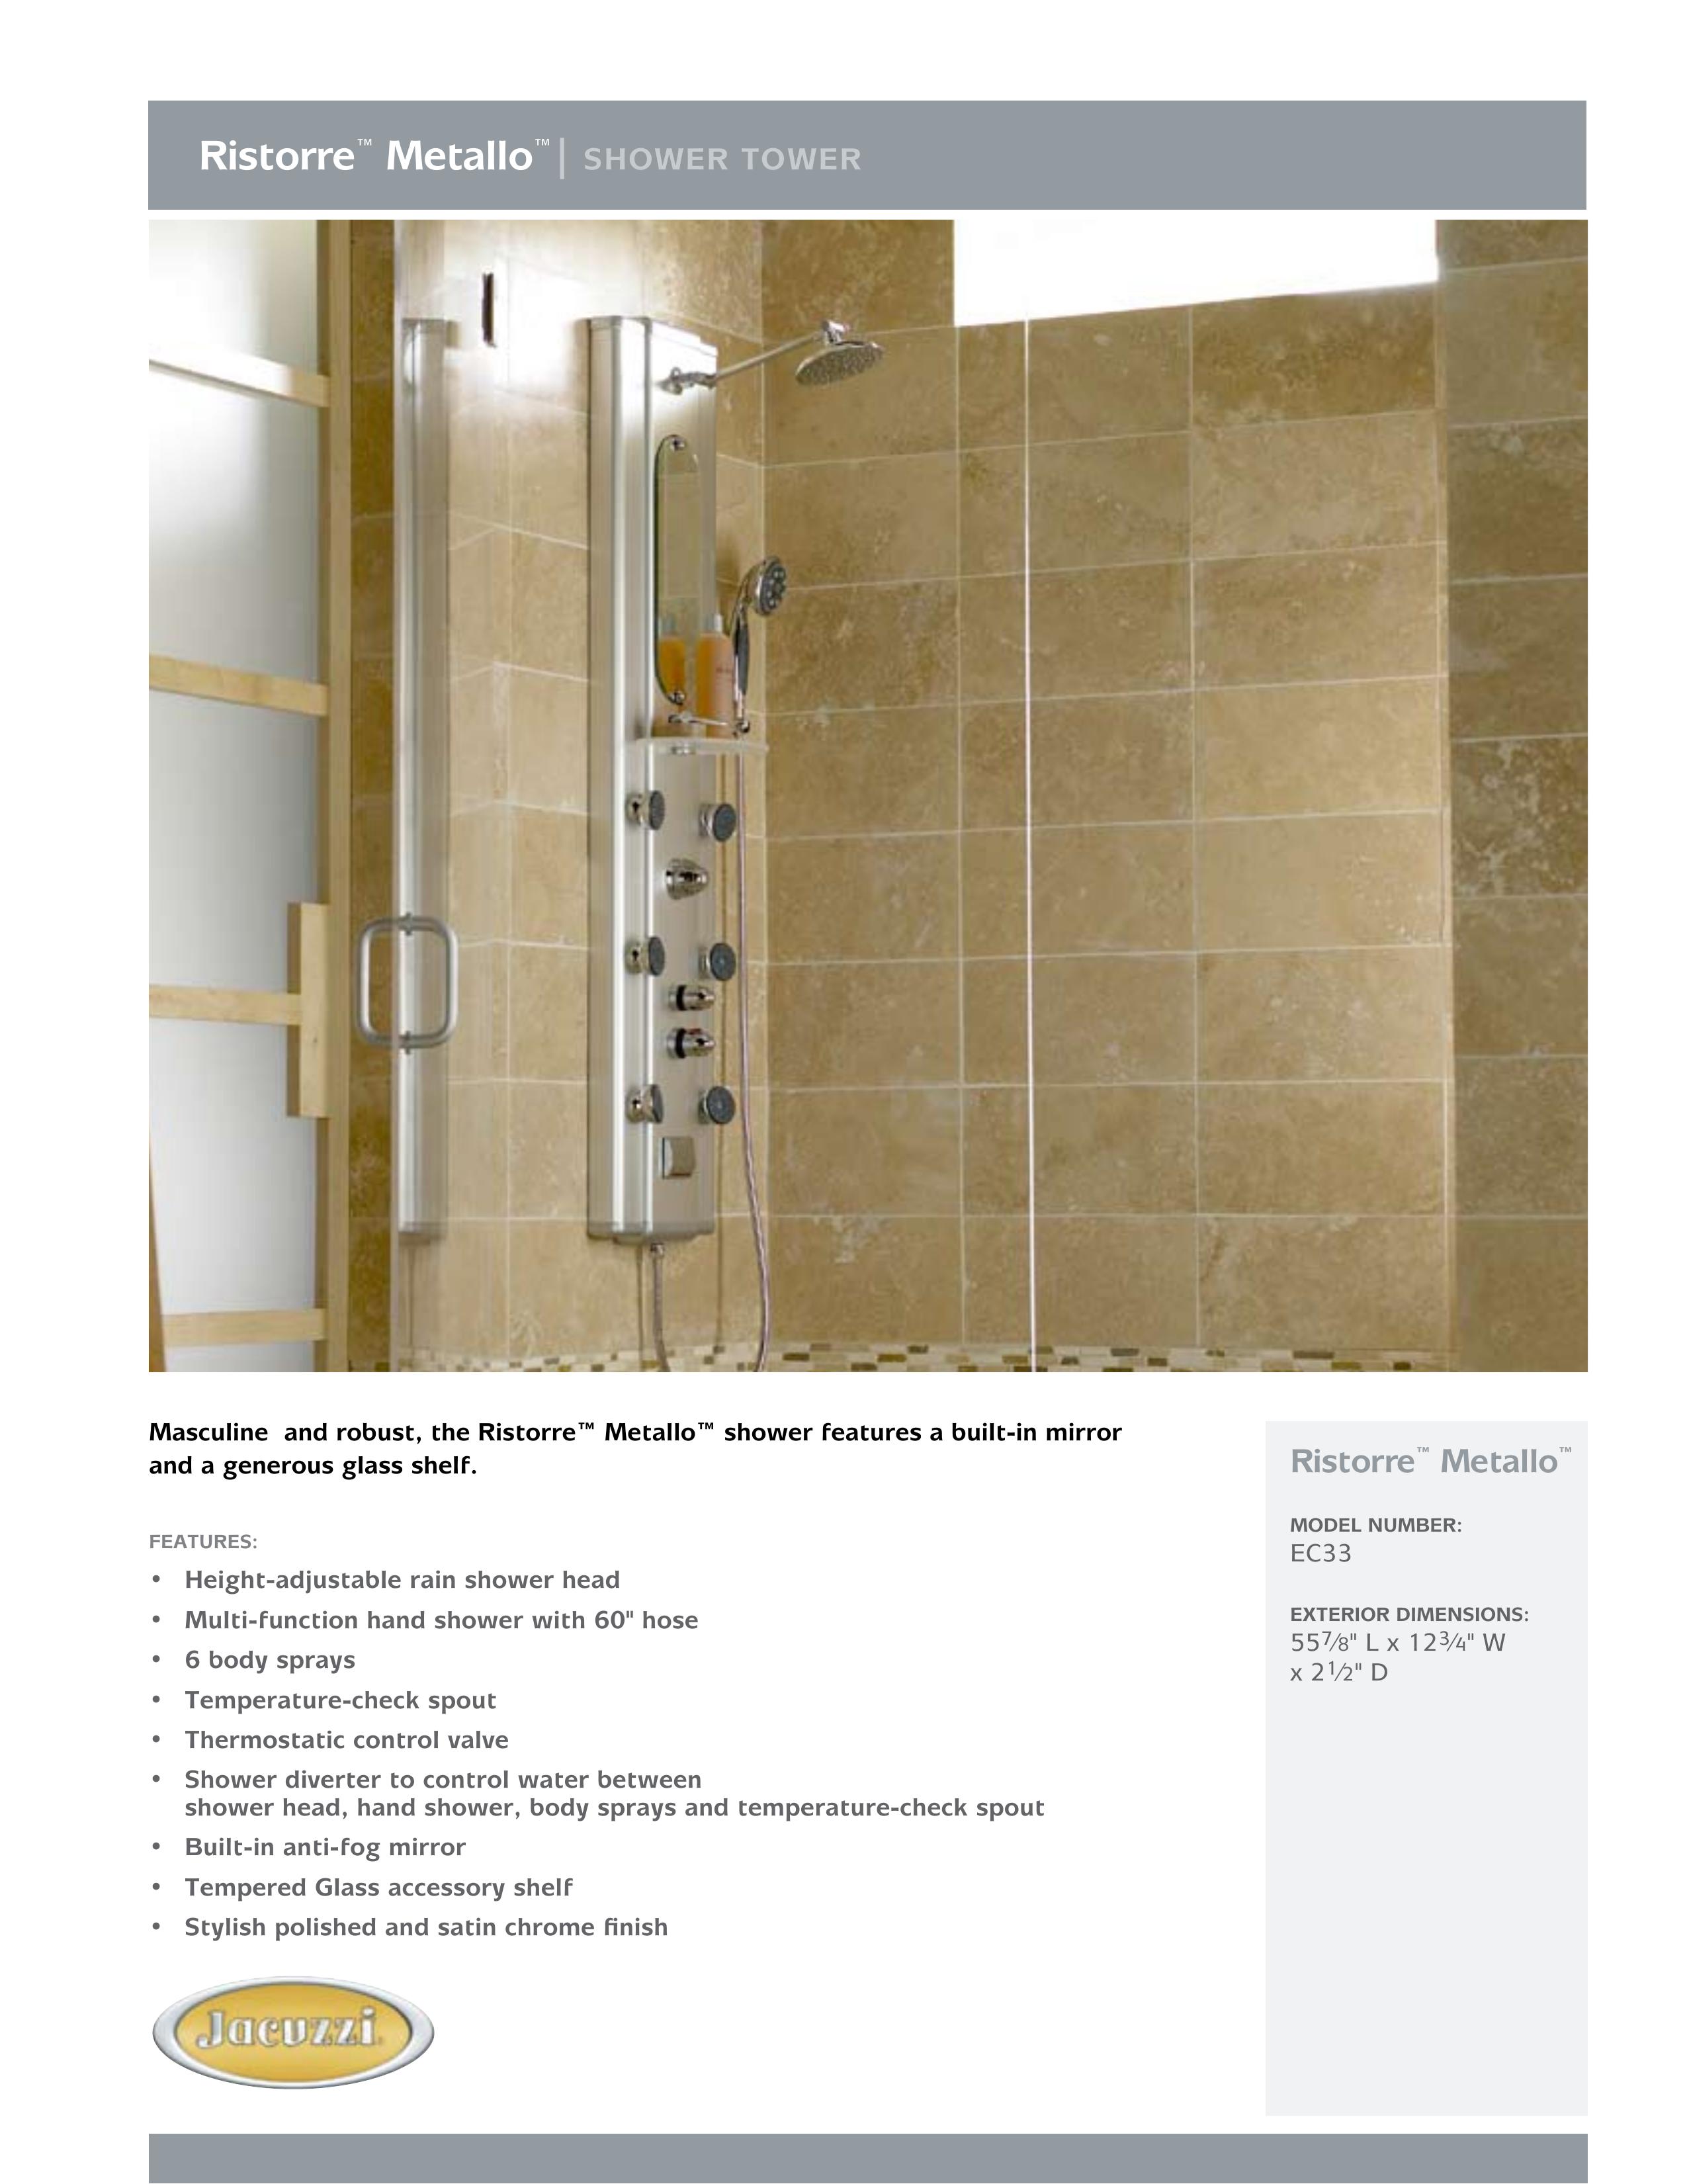 Jacuzzi EC33 Outdoor Shower User Manual